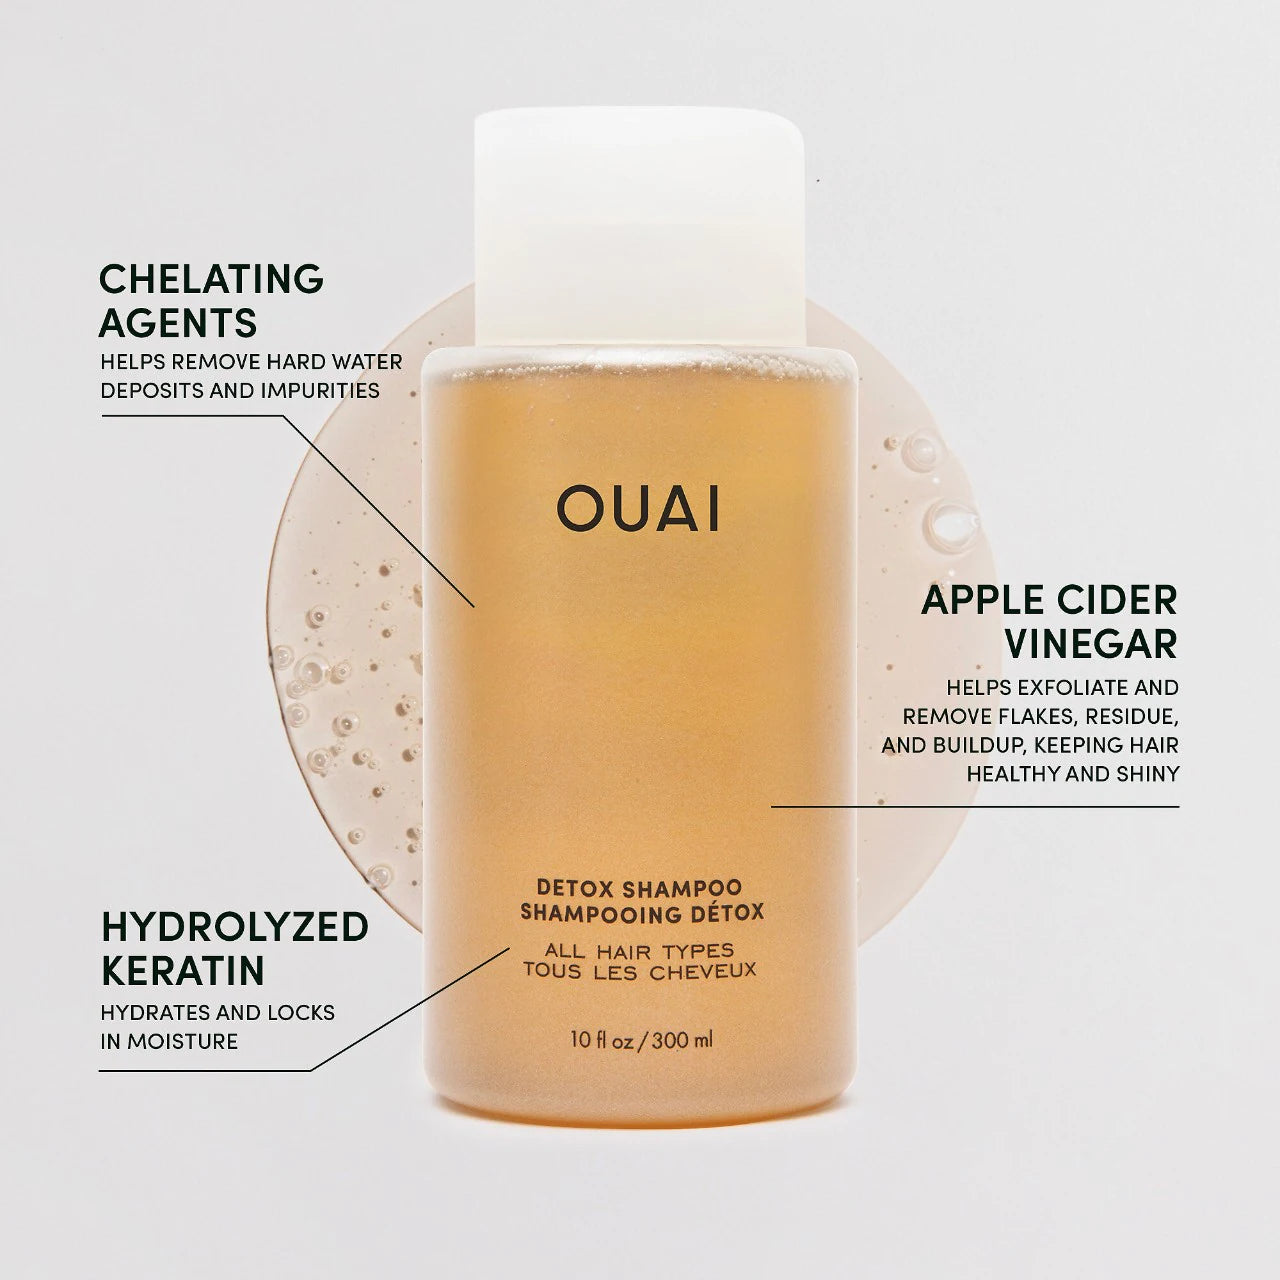 OUAI - Detox Shampoo | 300 mL